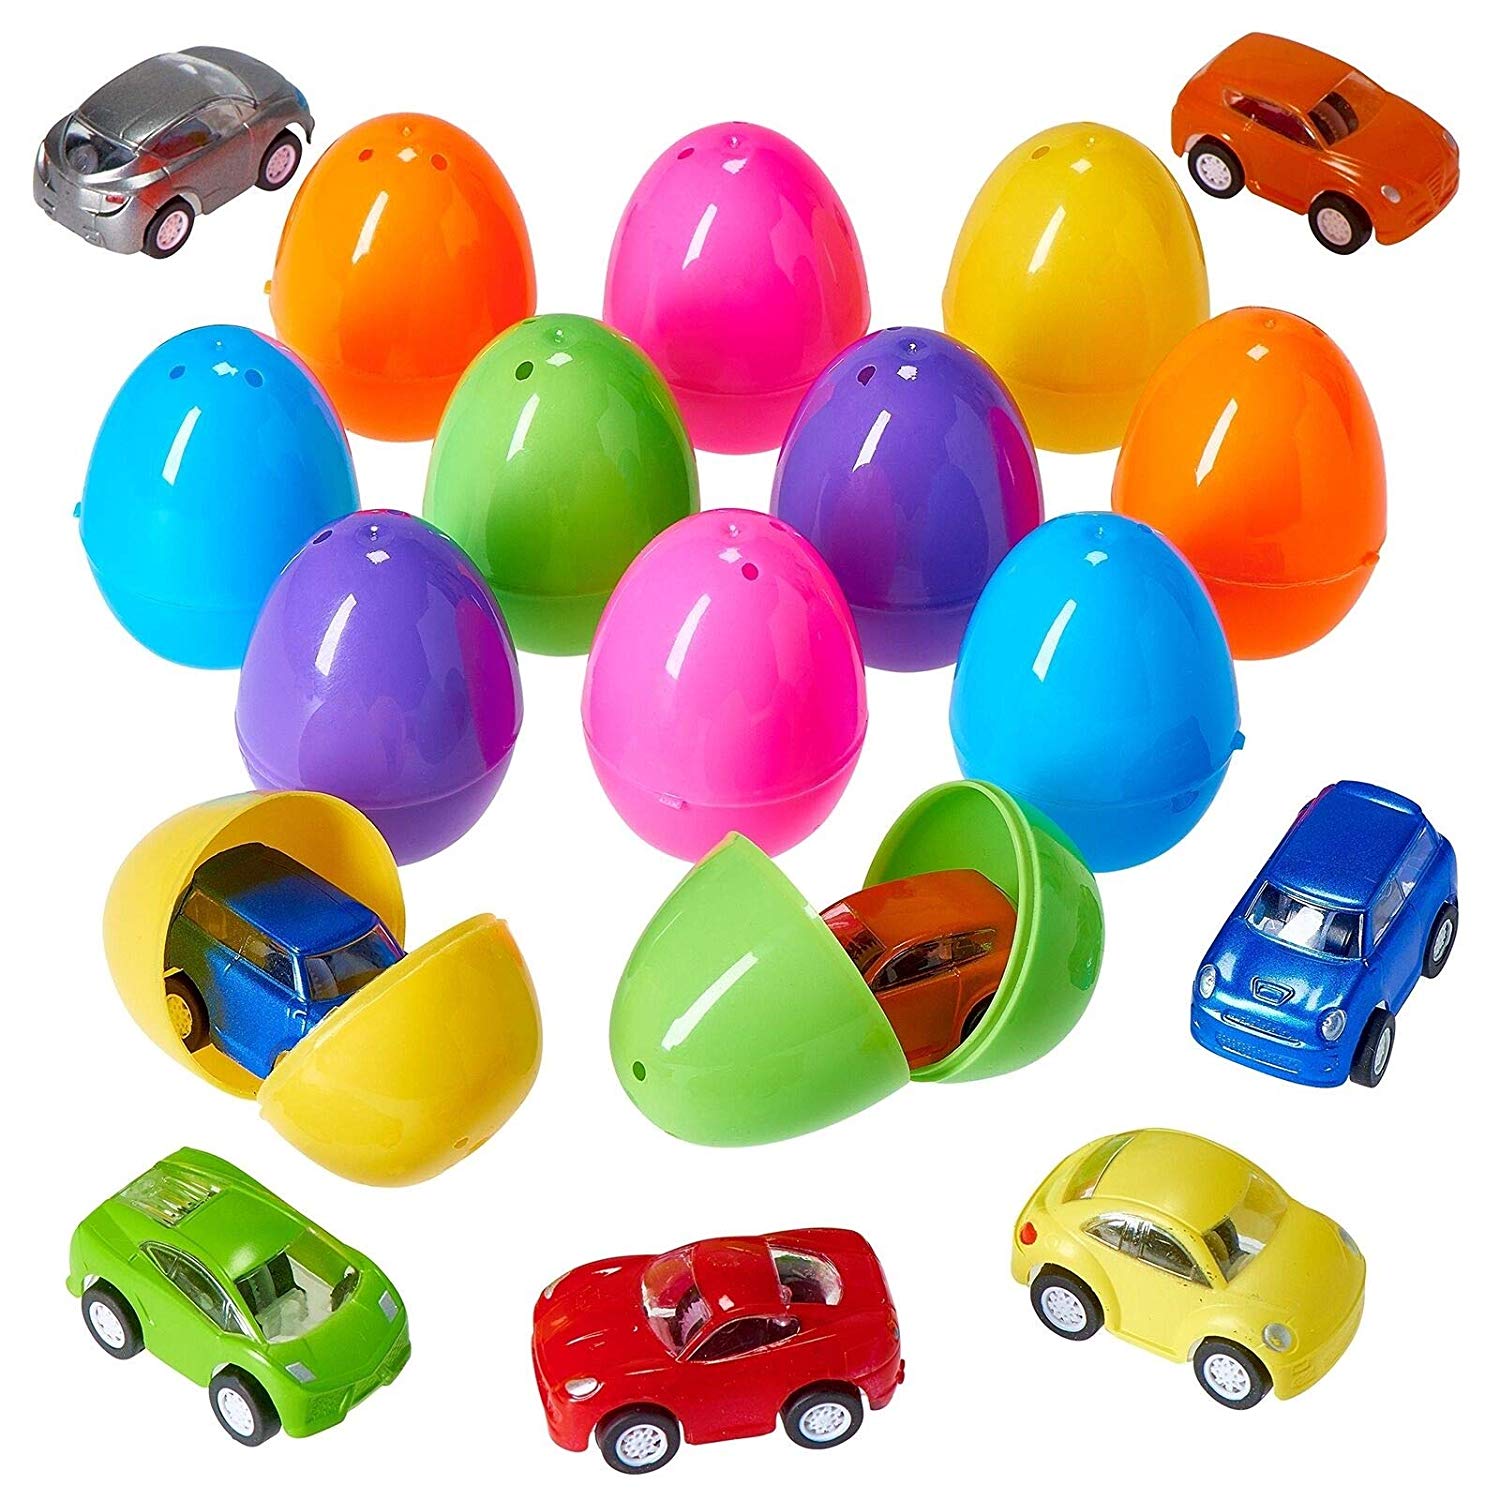 Пластиковые яйца купить. Пластиковые яйца. Машинки в пластиковом яйце. Пластиковые яйца с игрушкой. Игрушечные машинки в яйцах.